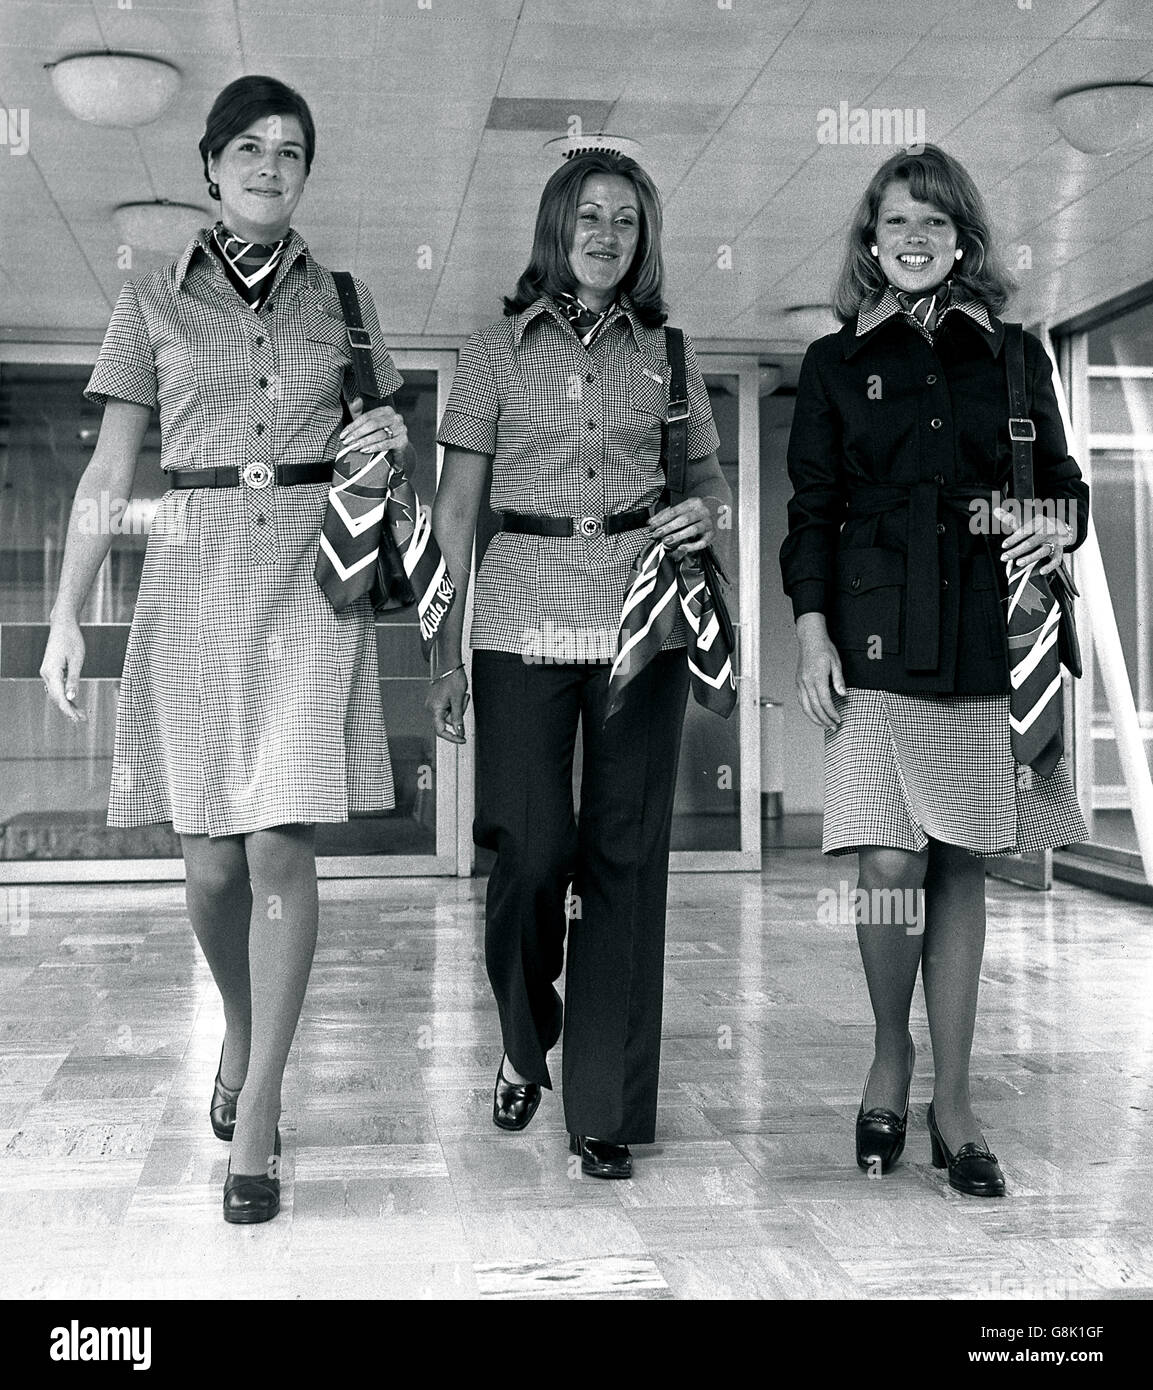 (Von links nach rechts) Marion Dodd, Sally Springford und Lee Regos, Flughostessen von Air Canada am Flughafen Heathrow, modellieren neue Uniformen, die das Image der Fluggesellschaft verbessern sollen. Stockfoto